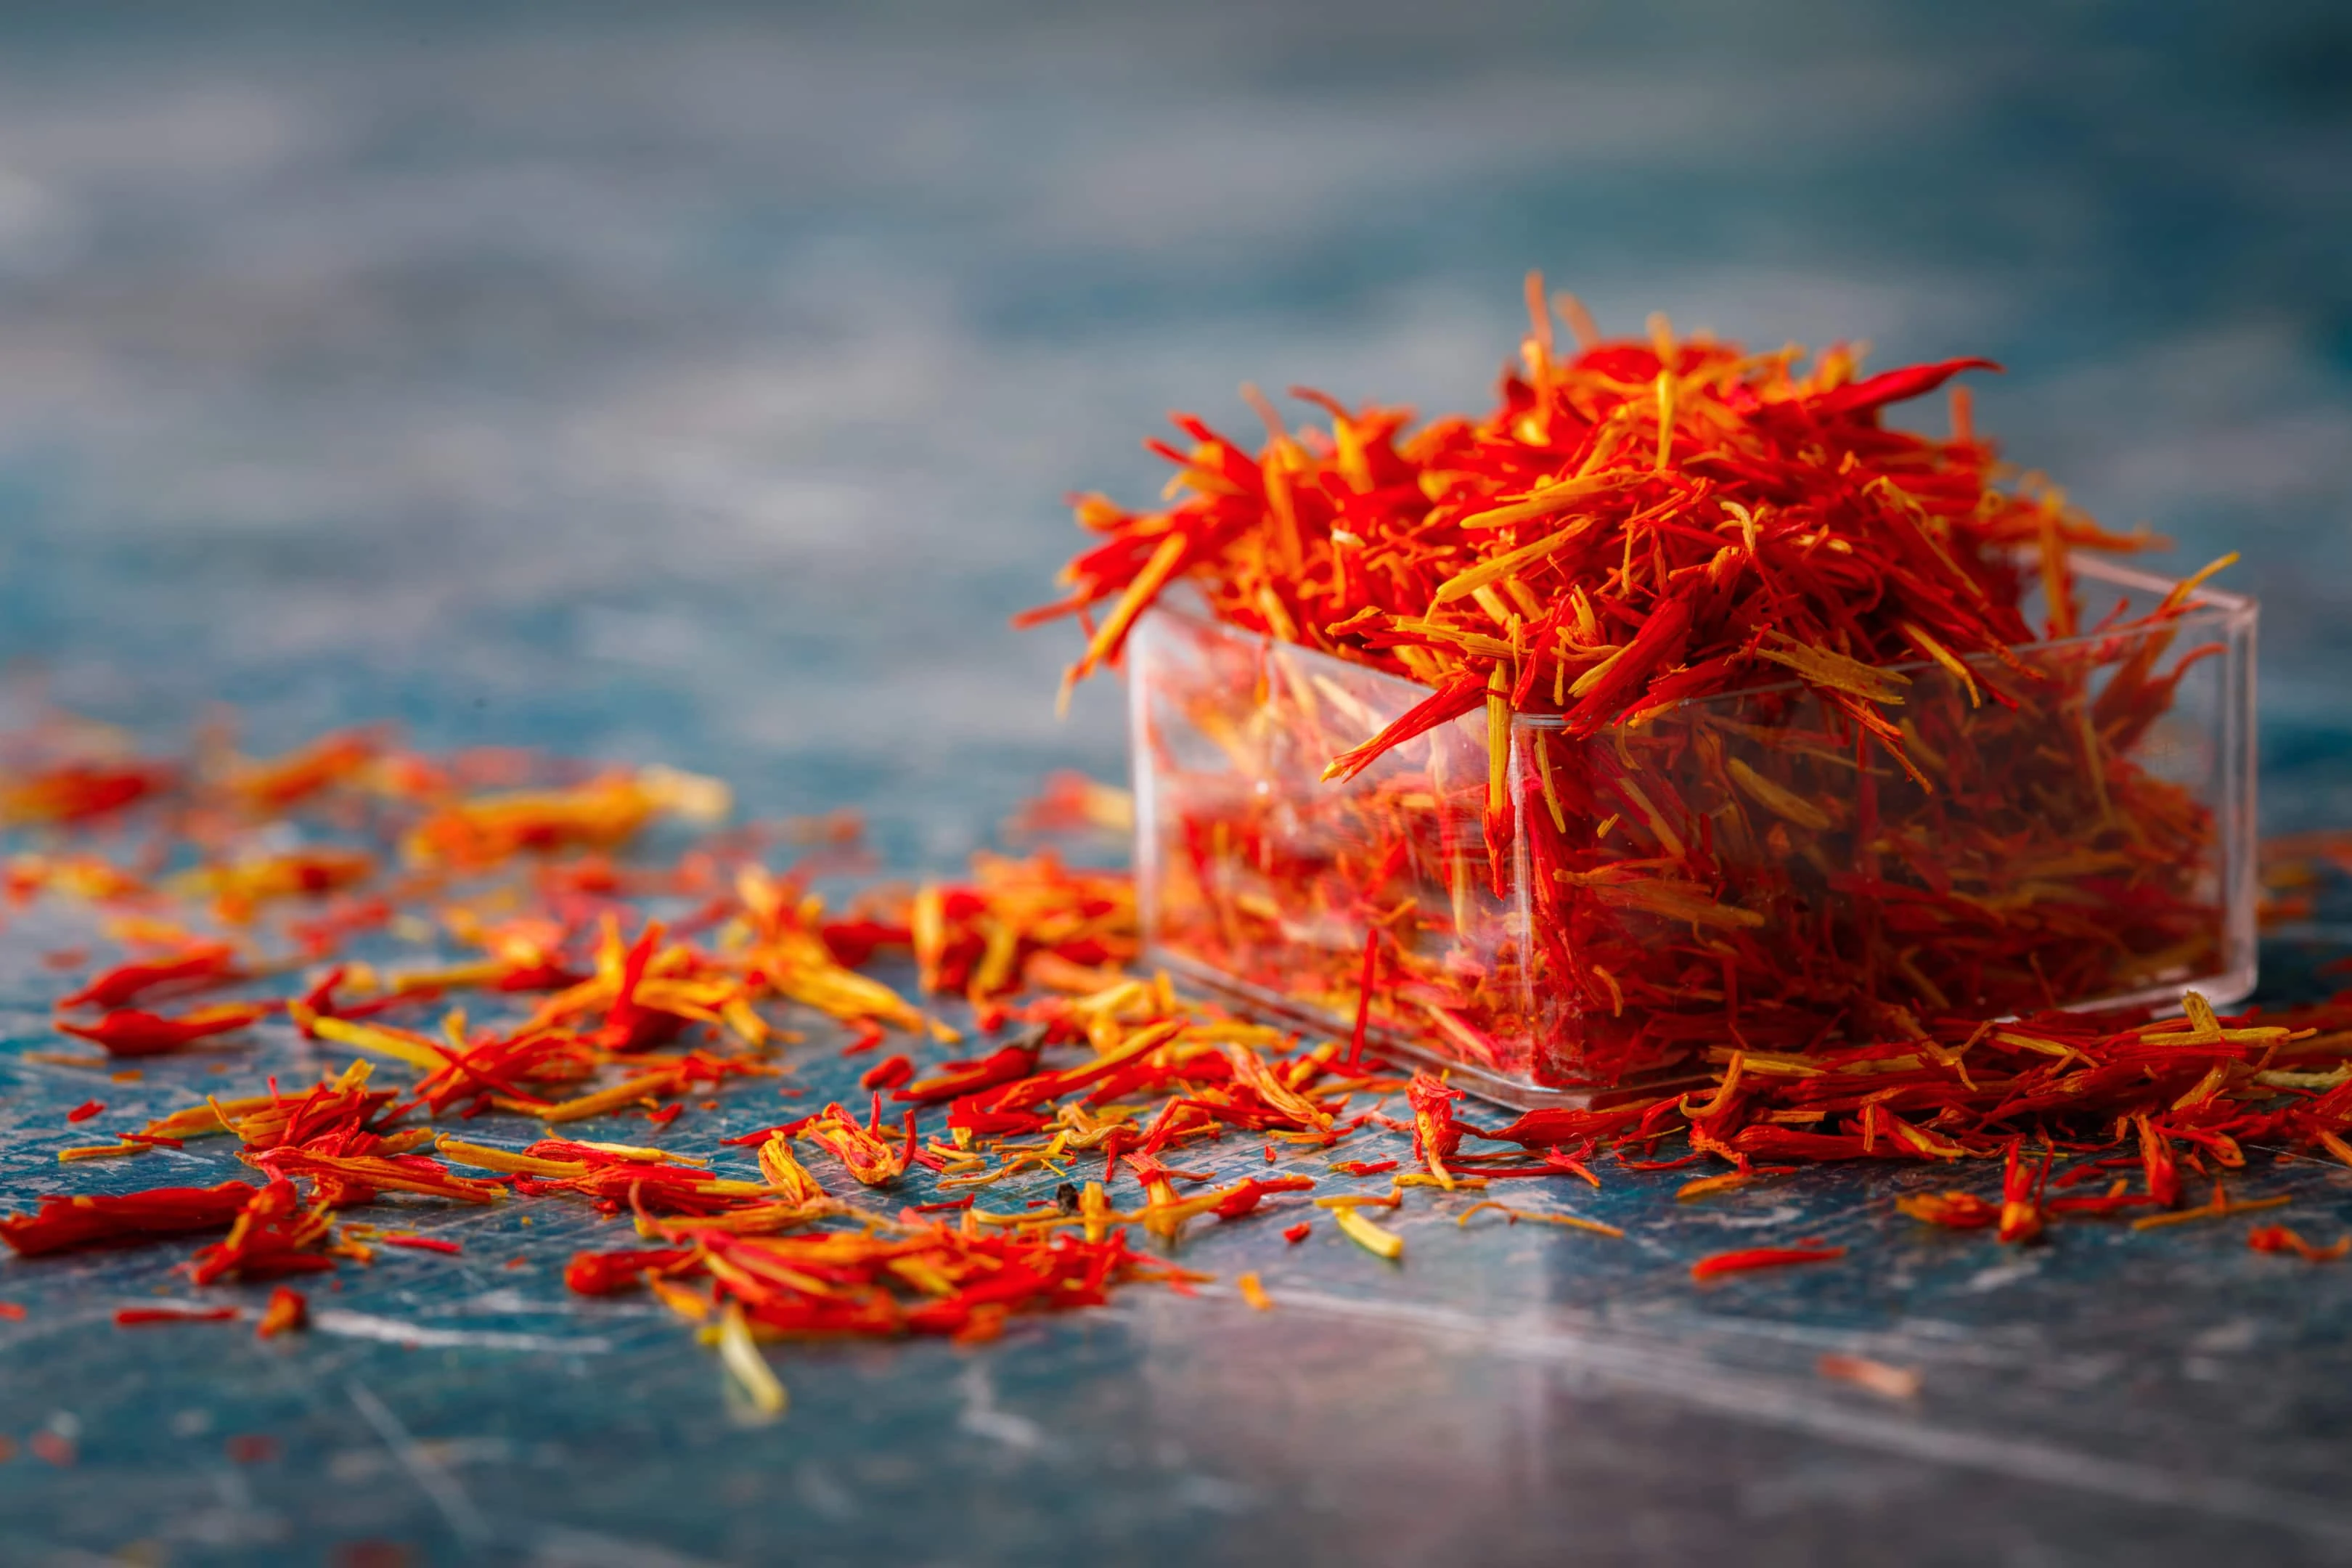 Dried saffron in glass